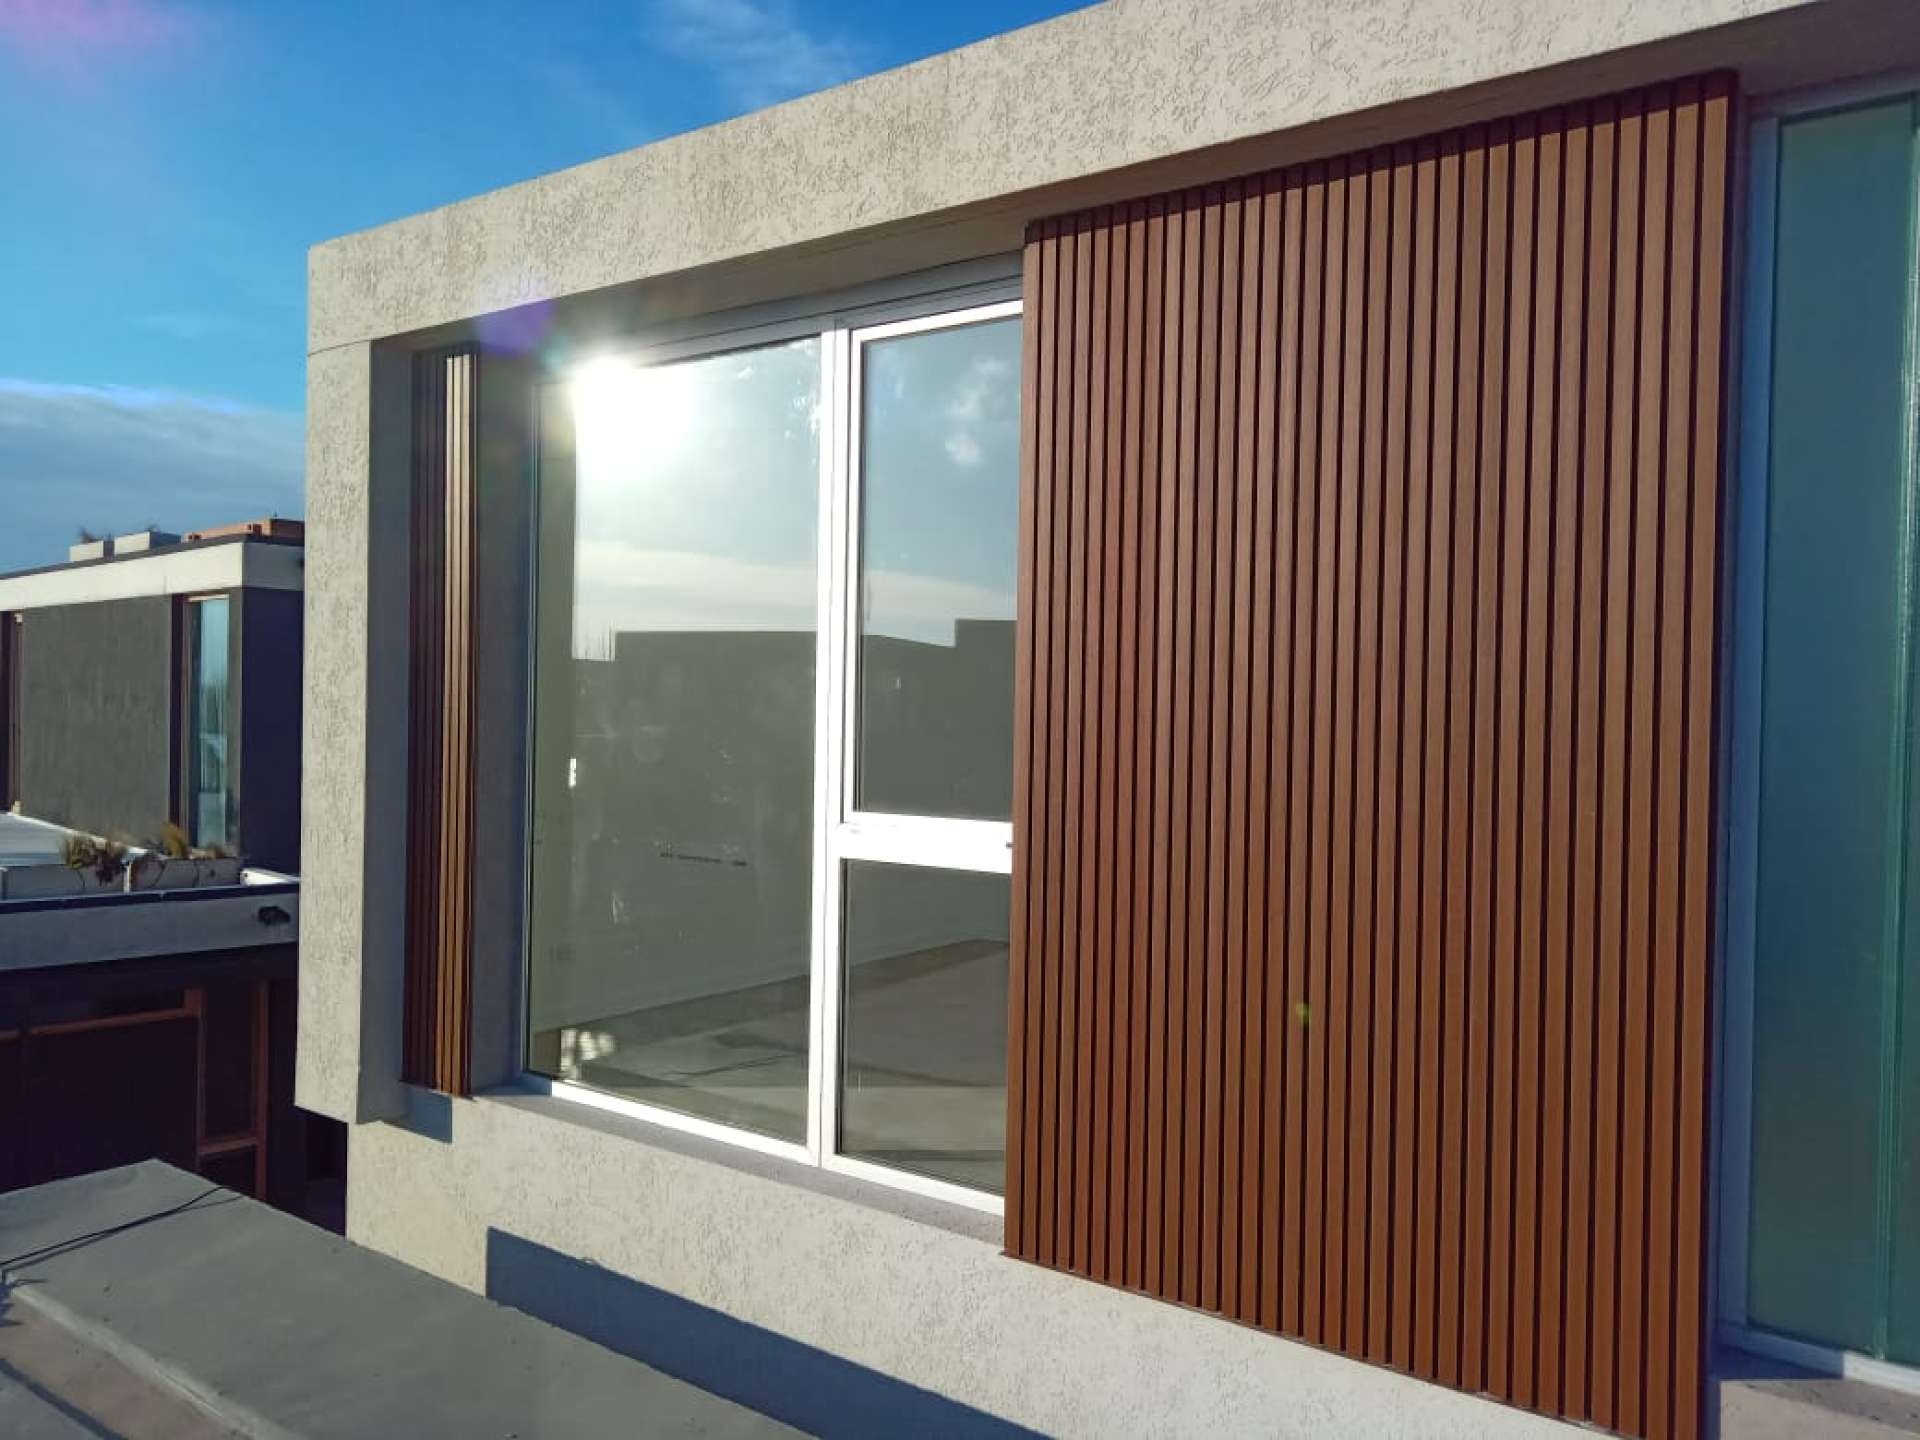 Elevando el atractivo exterior: Transformando exteriores con wall panel de PVC y WPC 